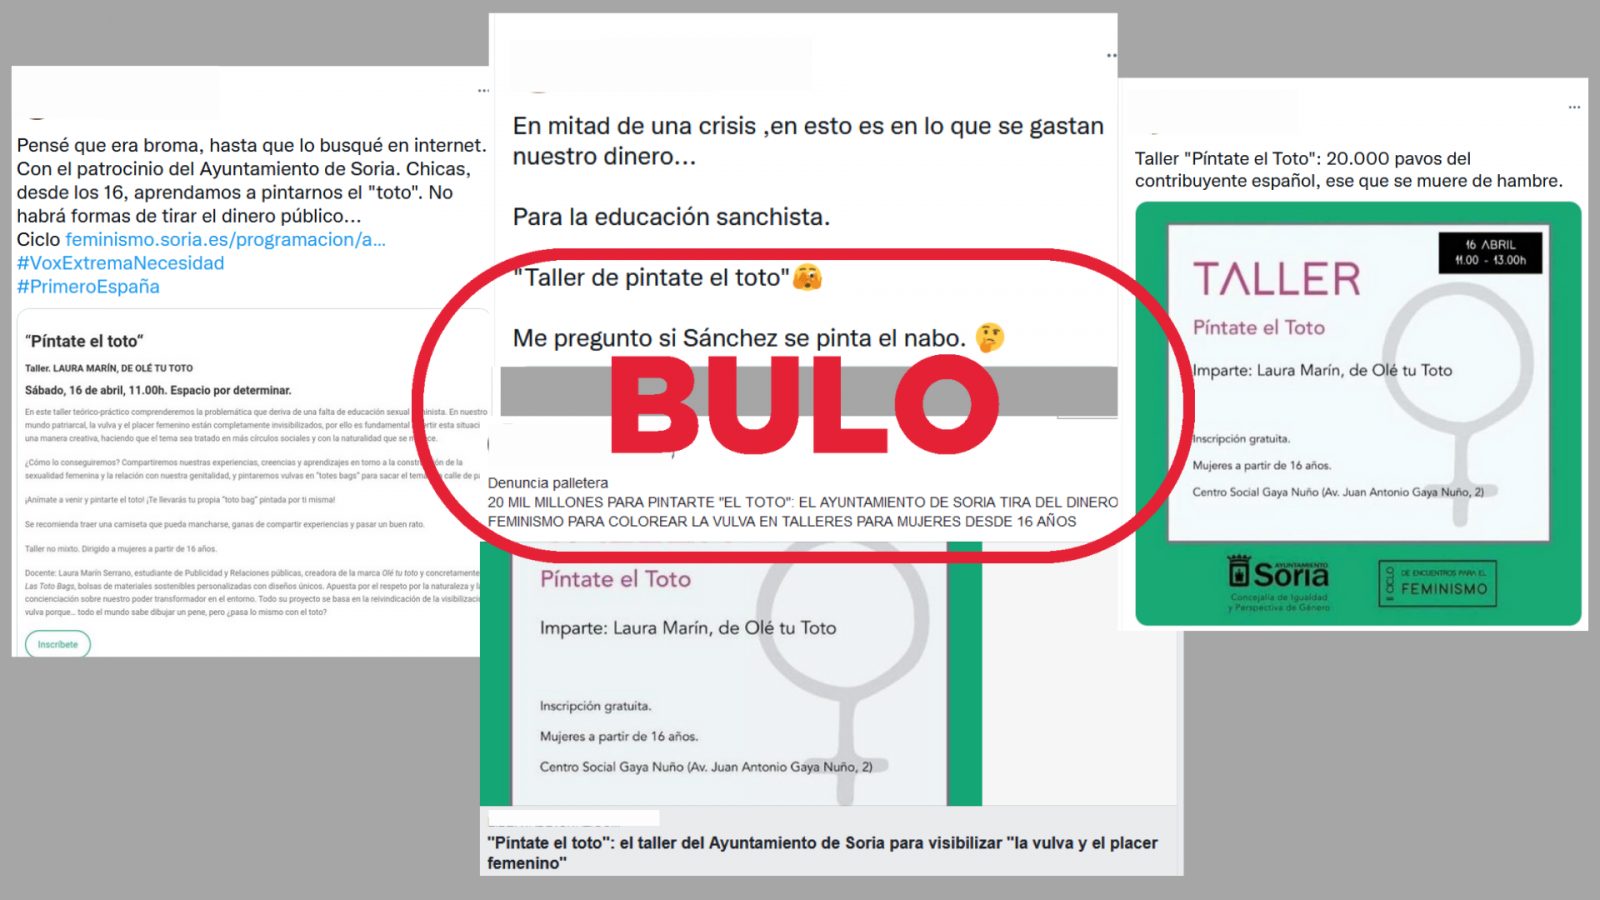 Mensajes de redes sociales que reproducen el bulo del taller feminista del Ayuntamiento de Soria, con el sello bulo en rojo